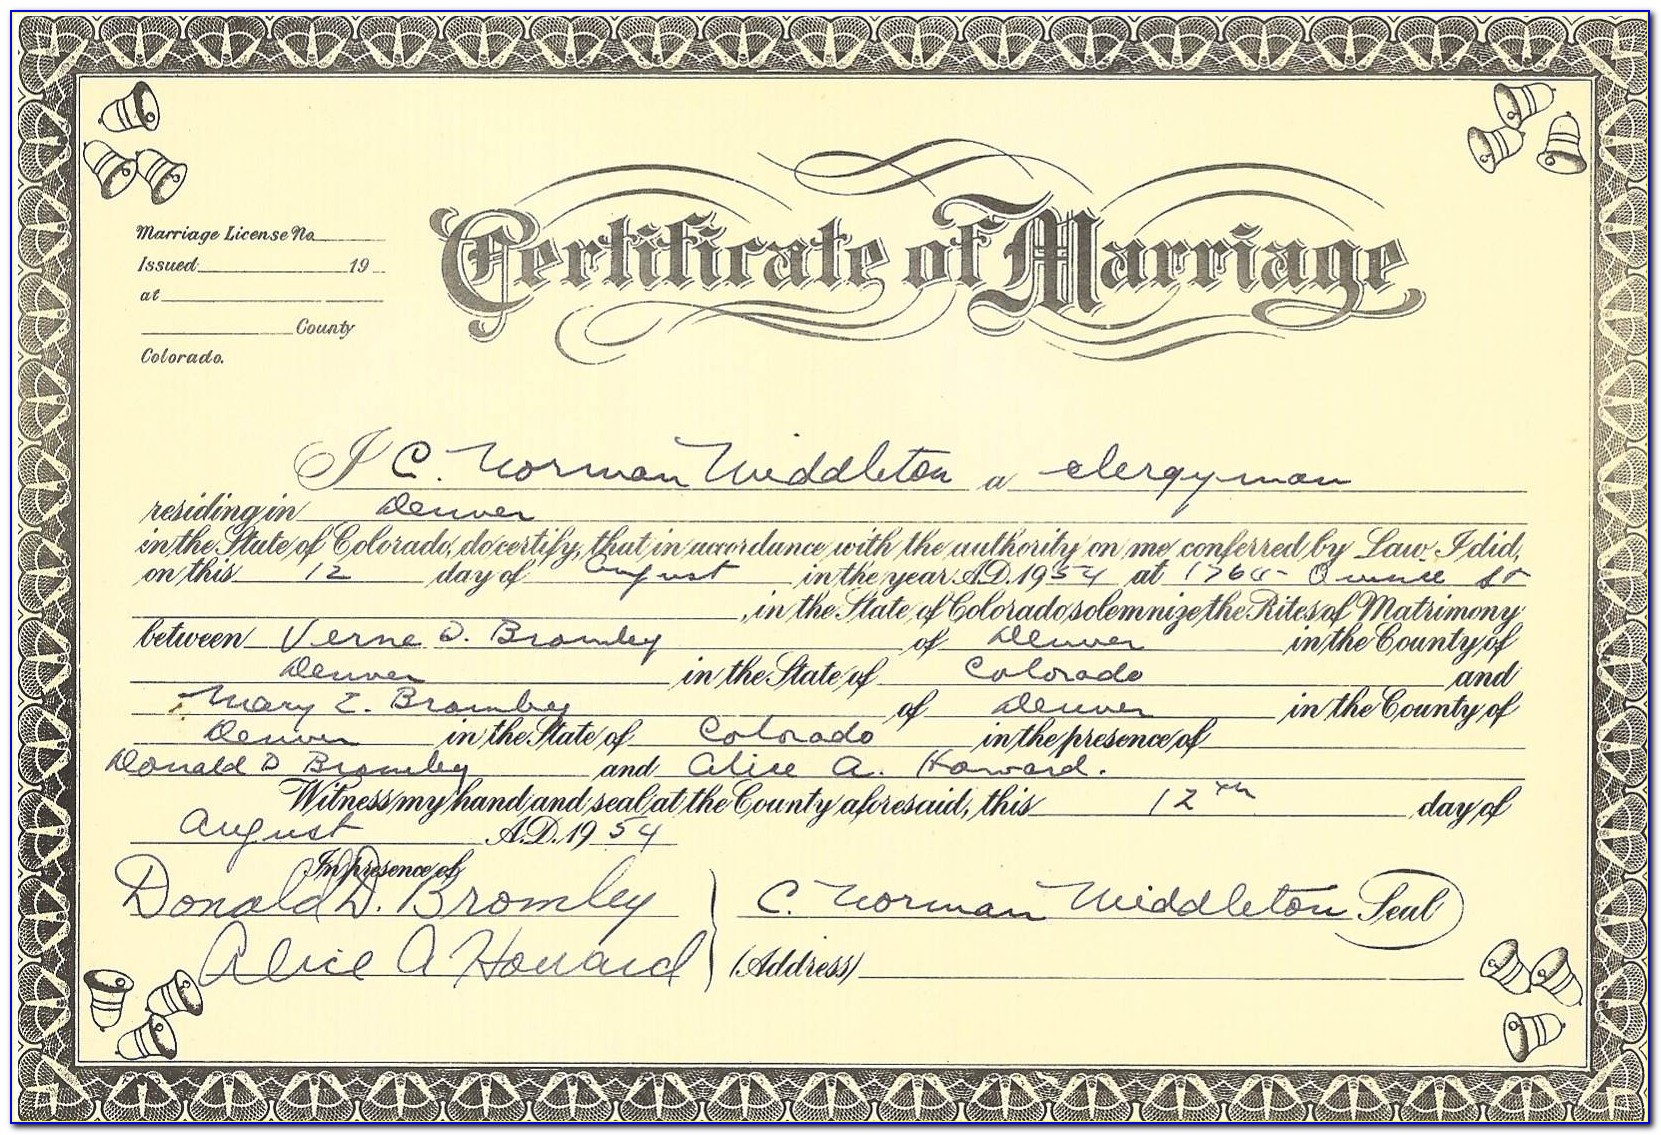 Jefferson County Co Birth Certificates